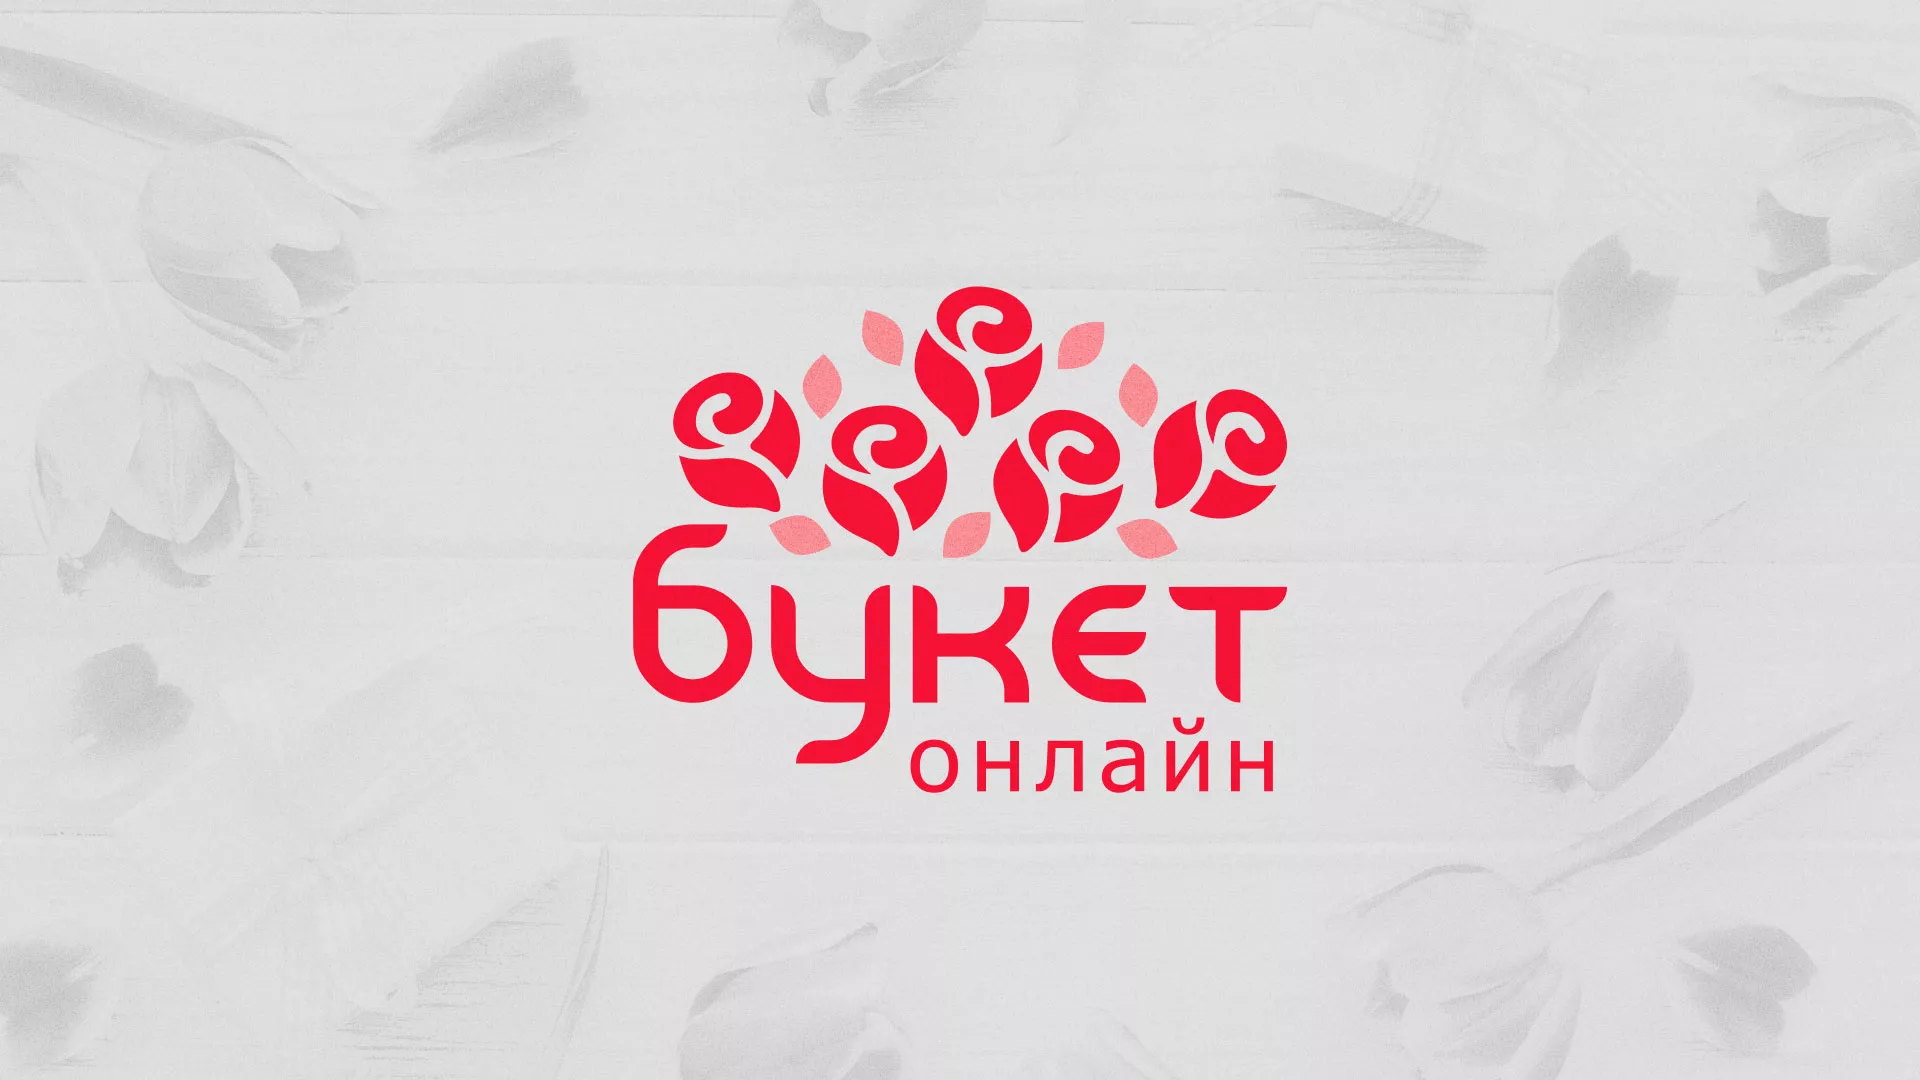 Создание интернет-магазина «Букет-онлайн» по цветам в Макарьеве